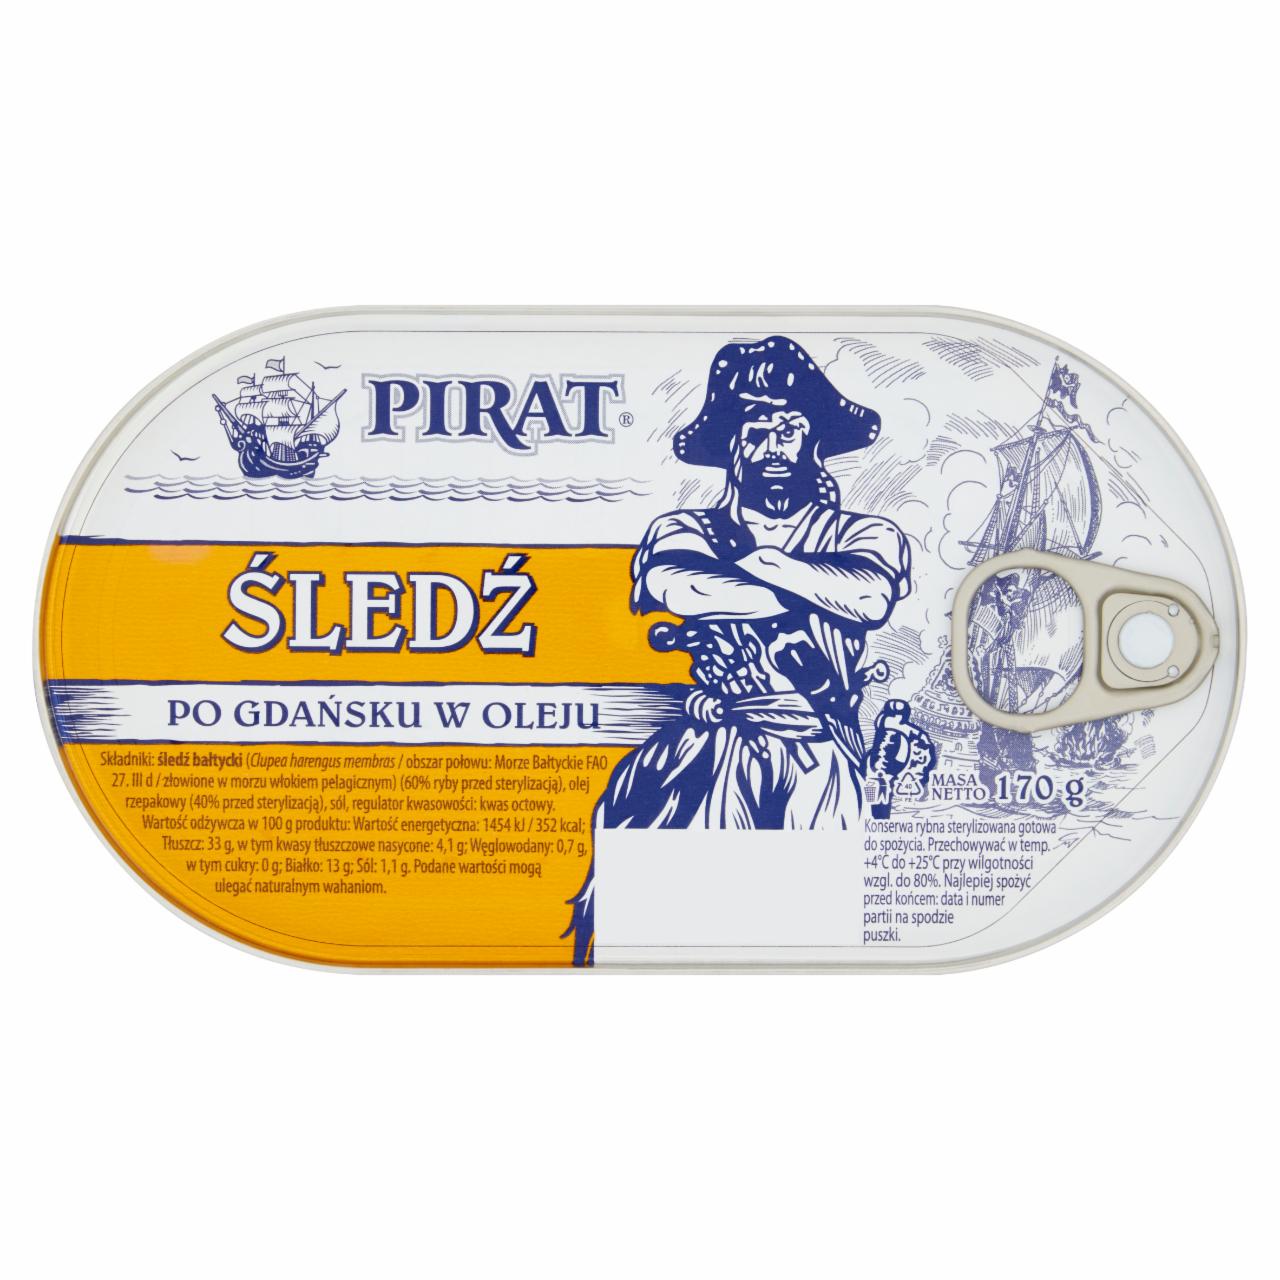 Zdjęcia - Pirat Śledź po gdańsku w oleju 170 g